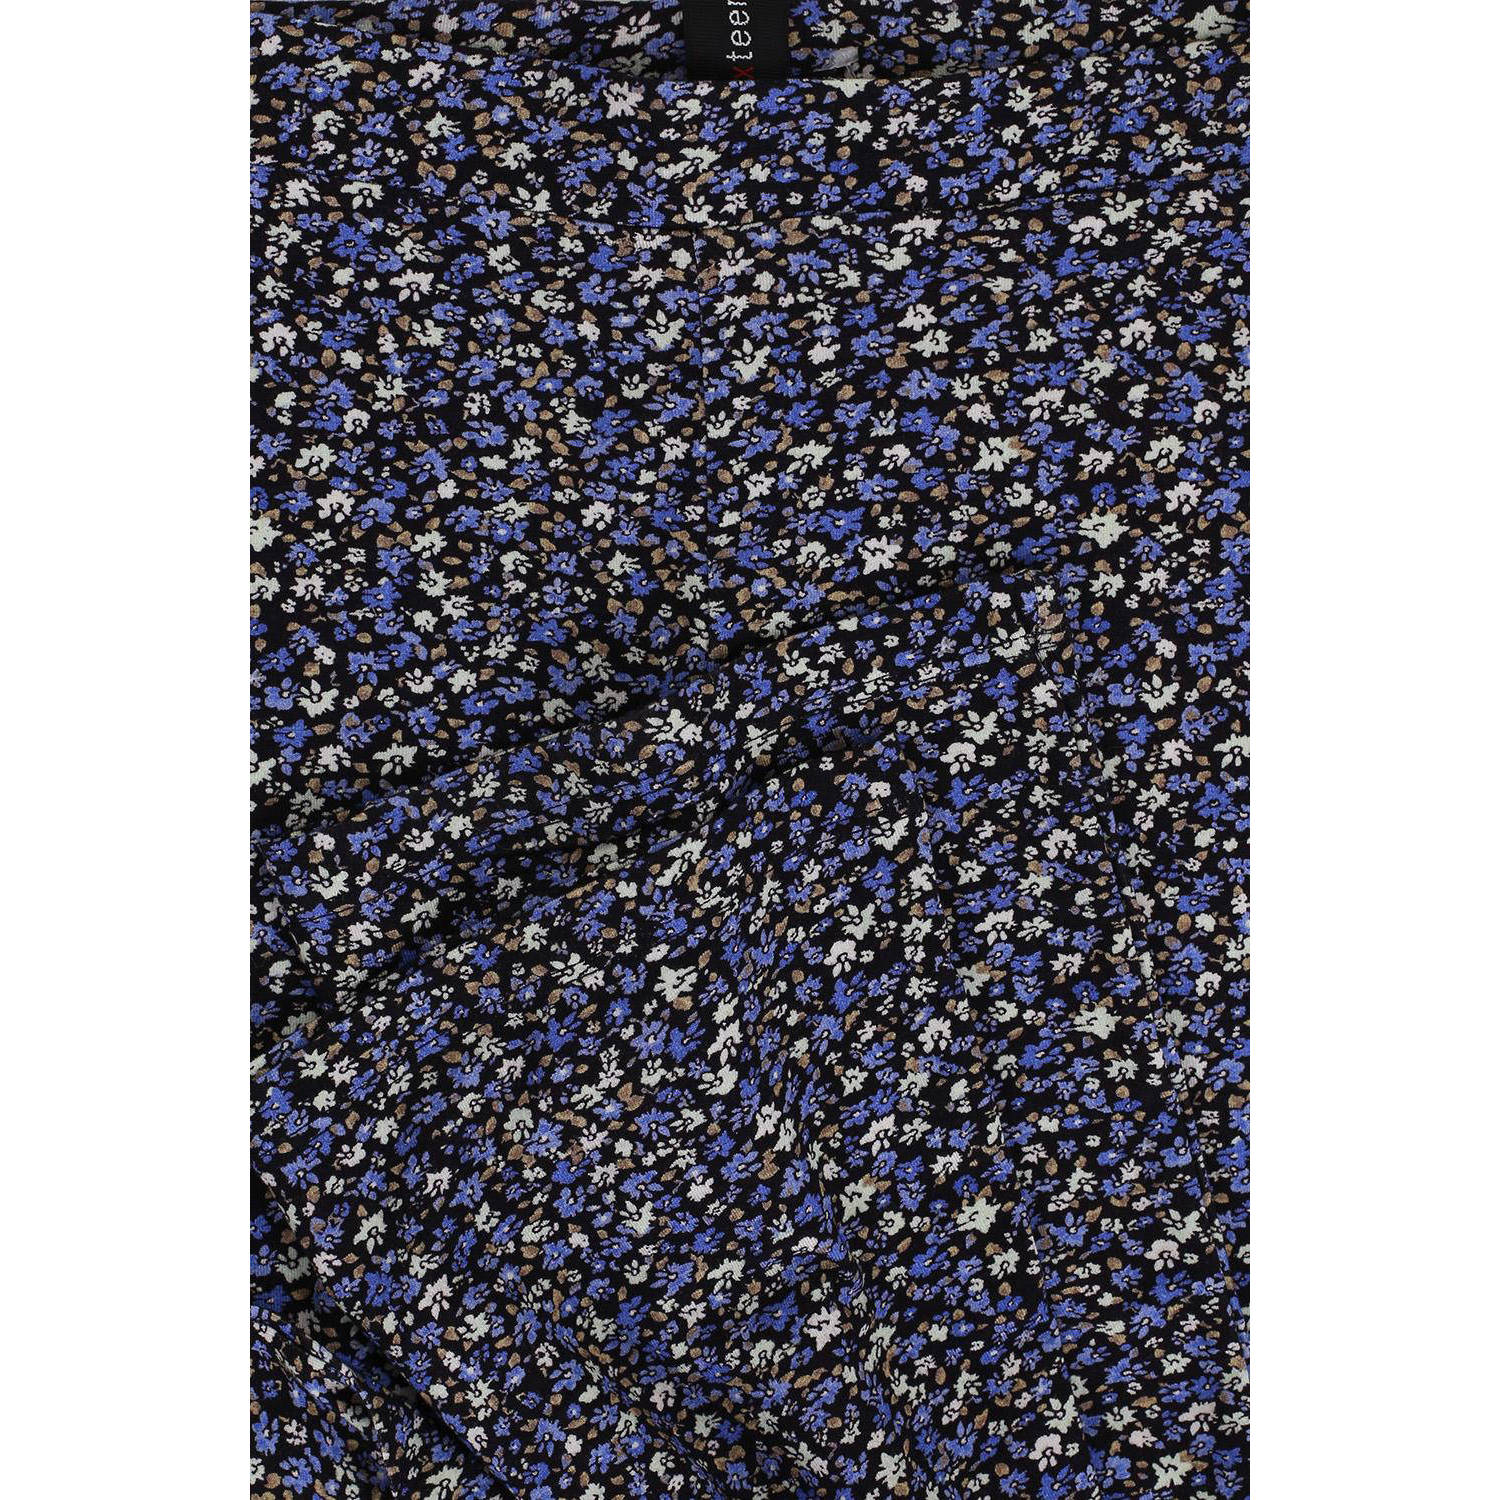 LOOXS 10sixteen gebloemde flared broek donkerblauw blauw ecru